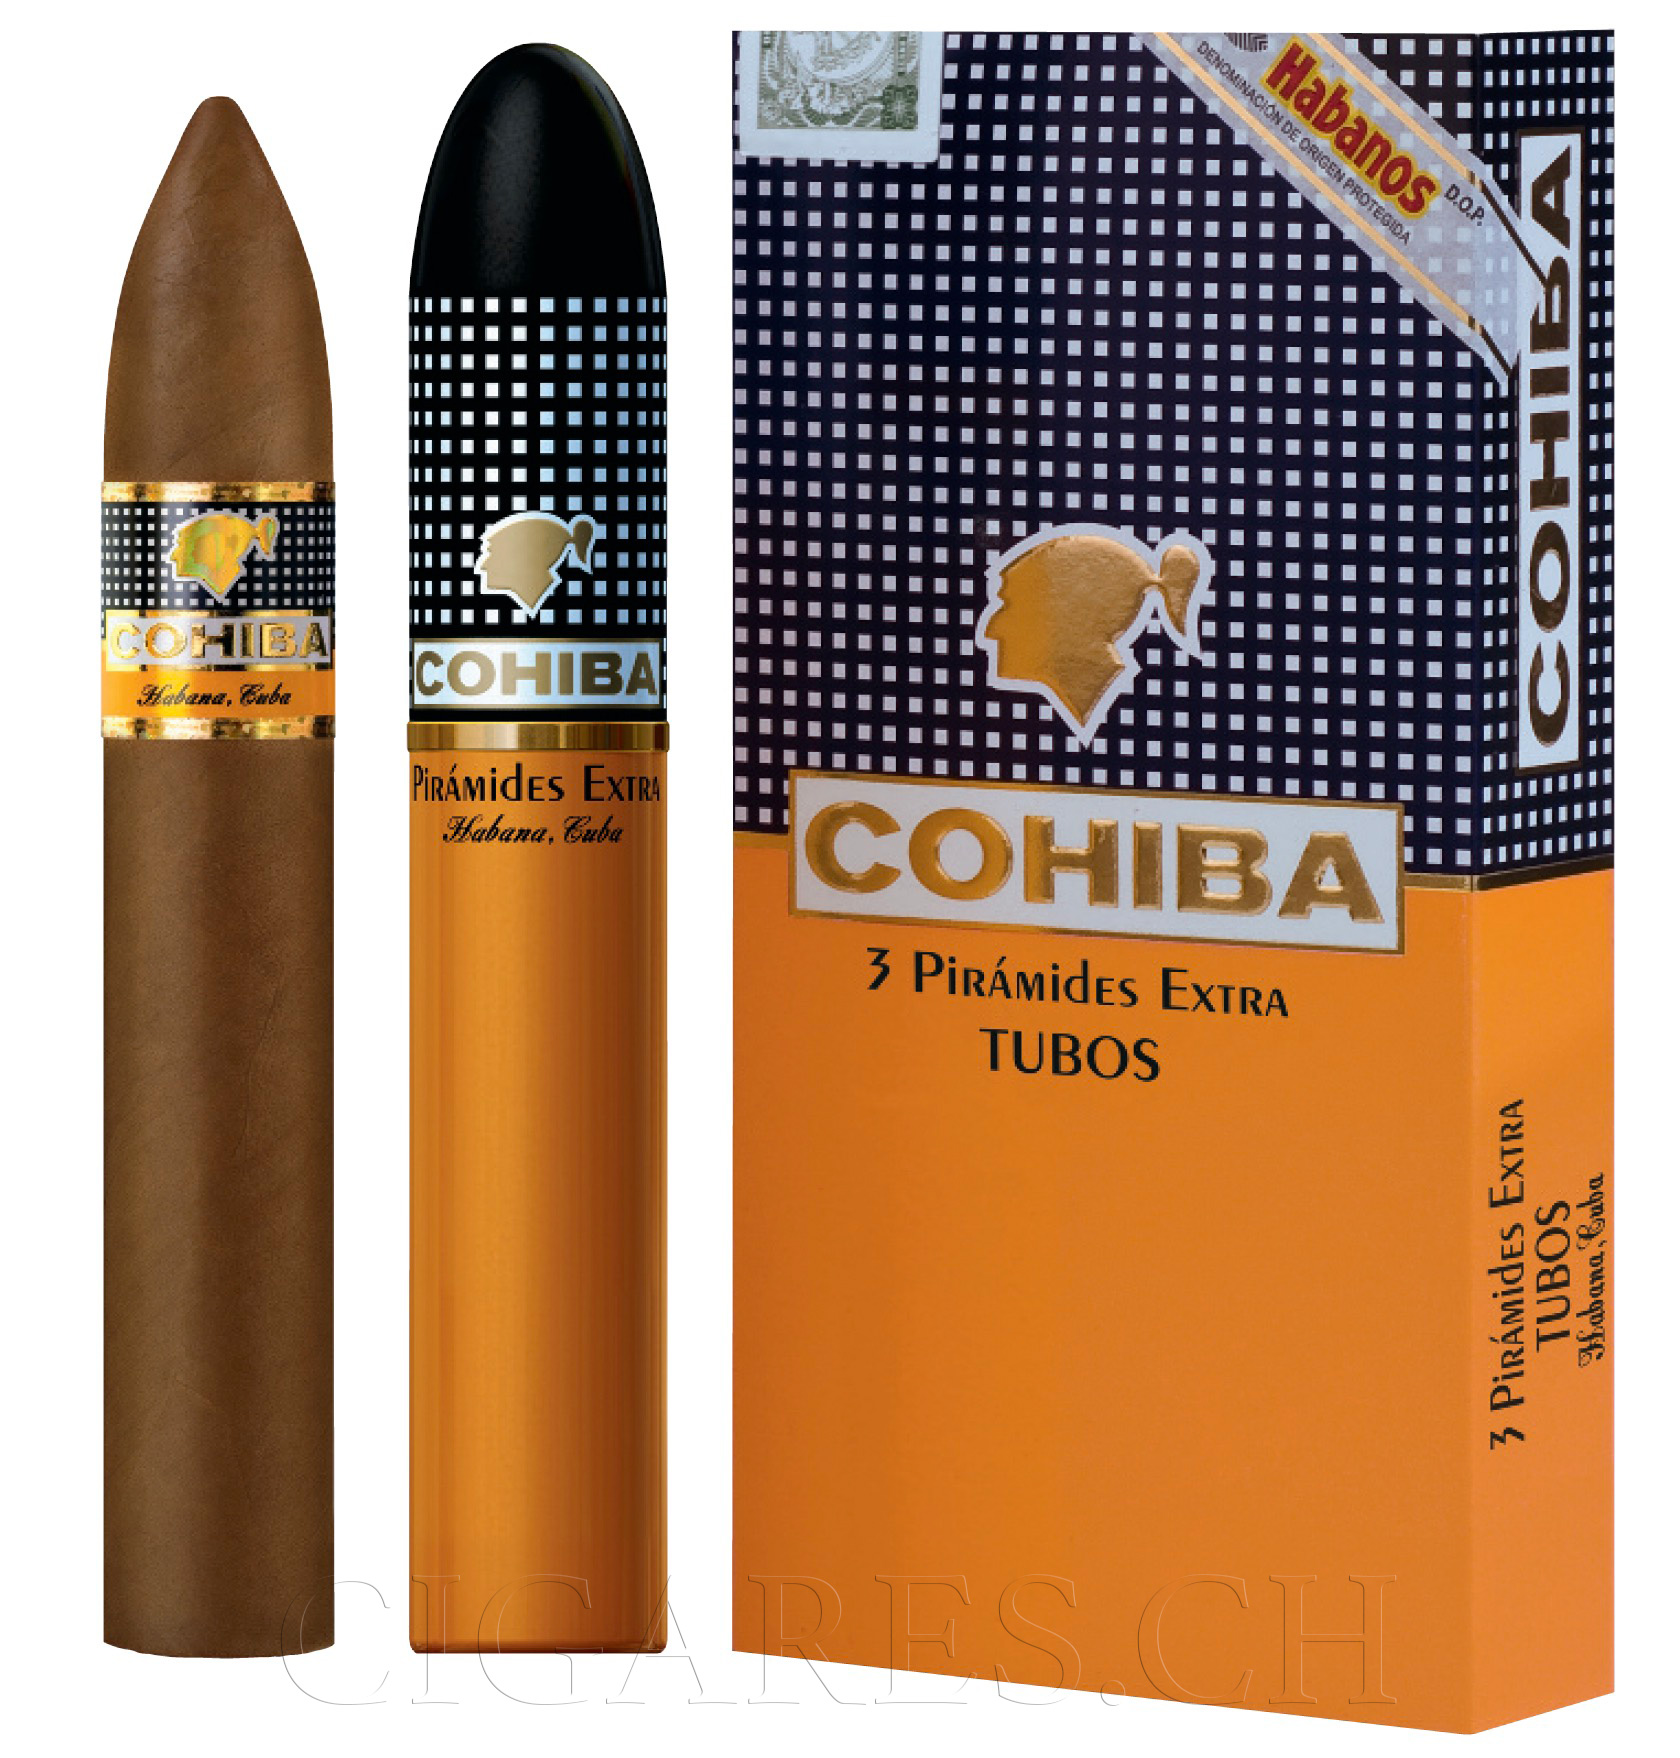 Kurze Geschichte von Cohiba: Fidel Castros beliebteste Zigarrenmarke aller  Zeiten – EGM Cigars